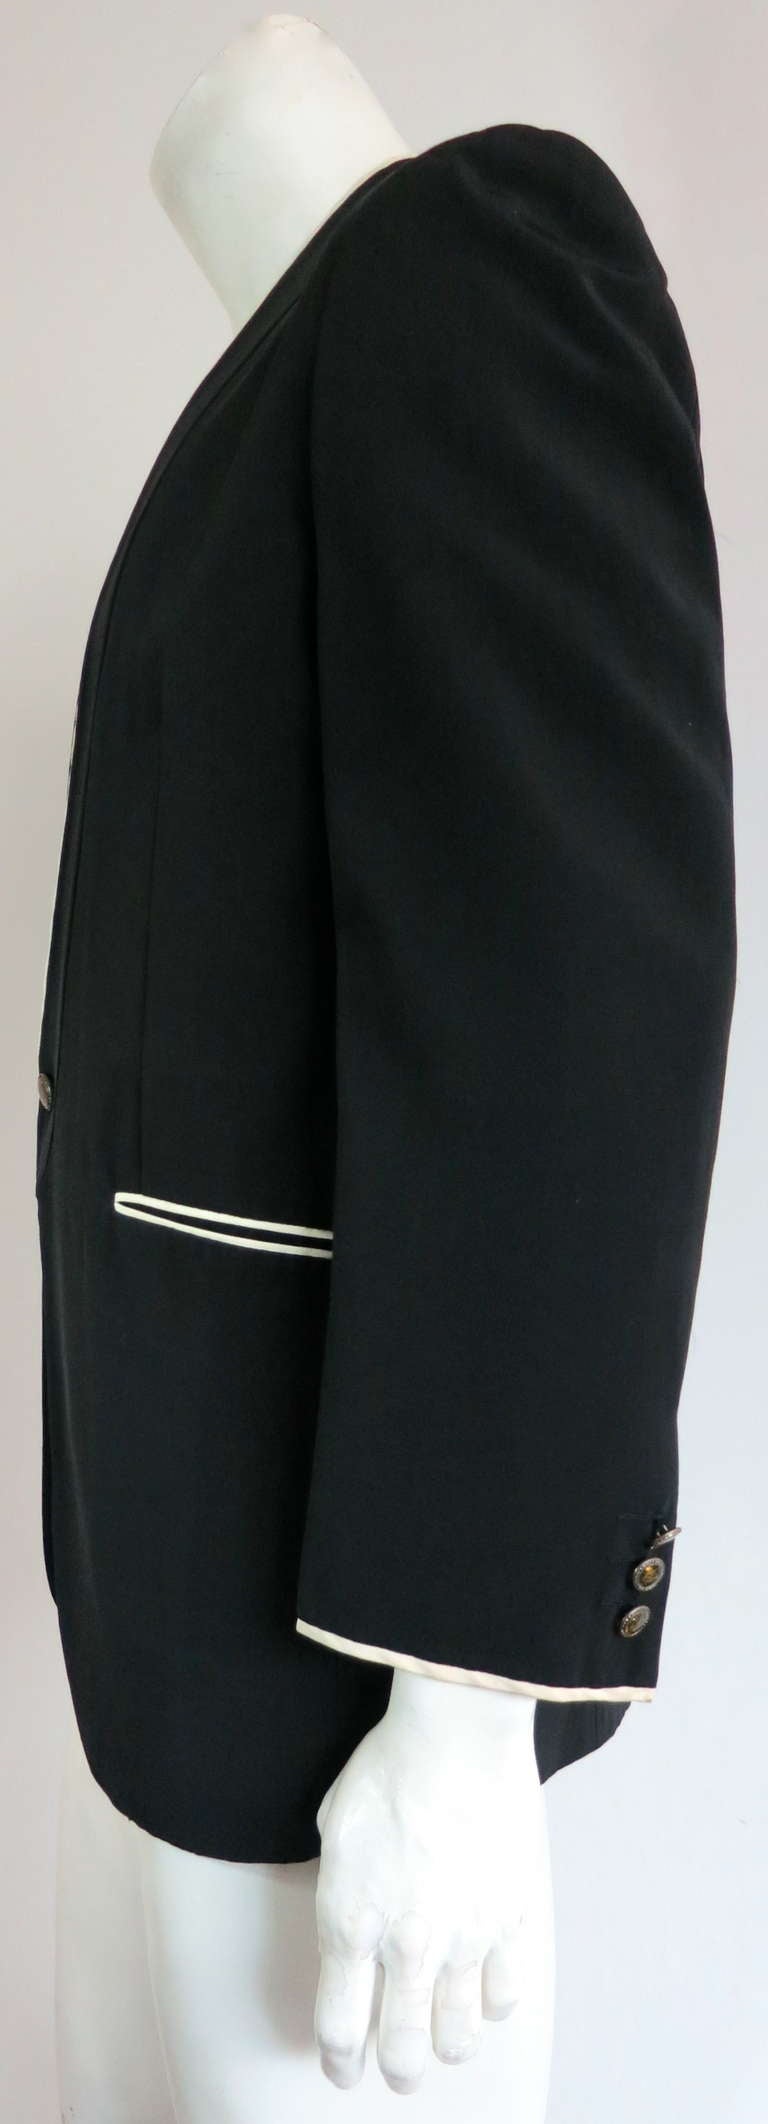 Vintage MATSUDA JAPAN Men's Black faille dinner jacket 3